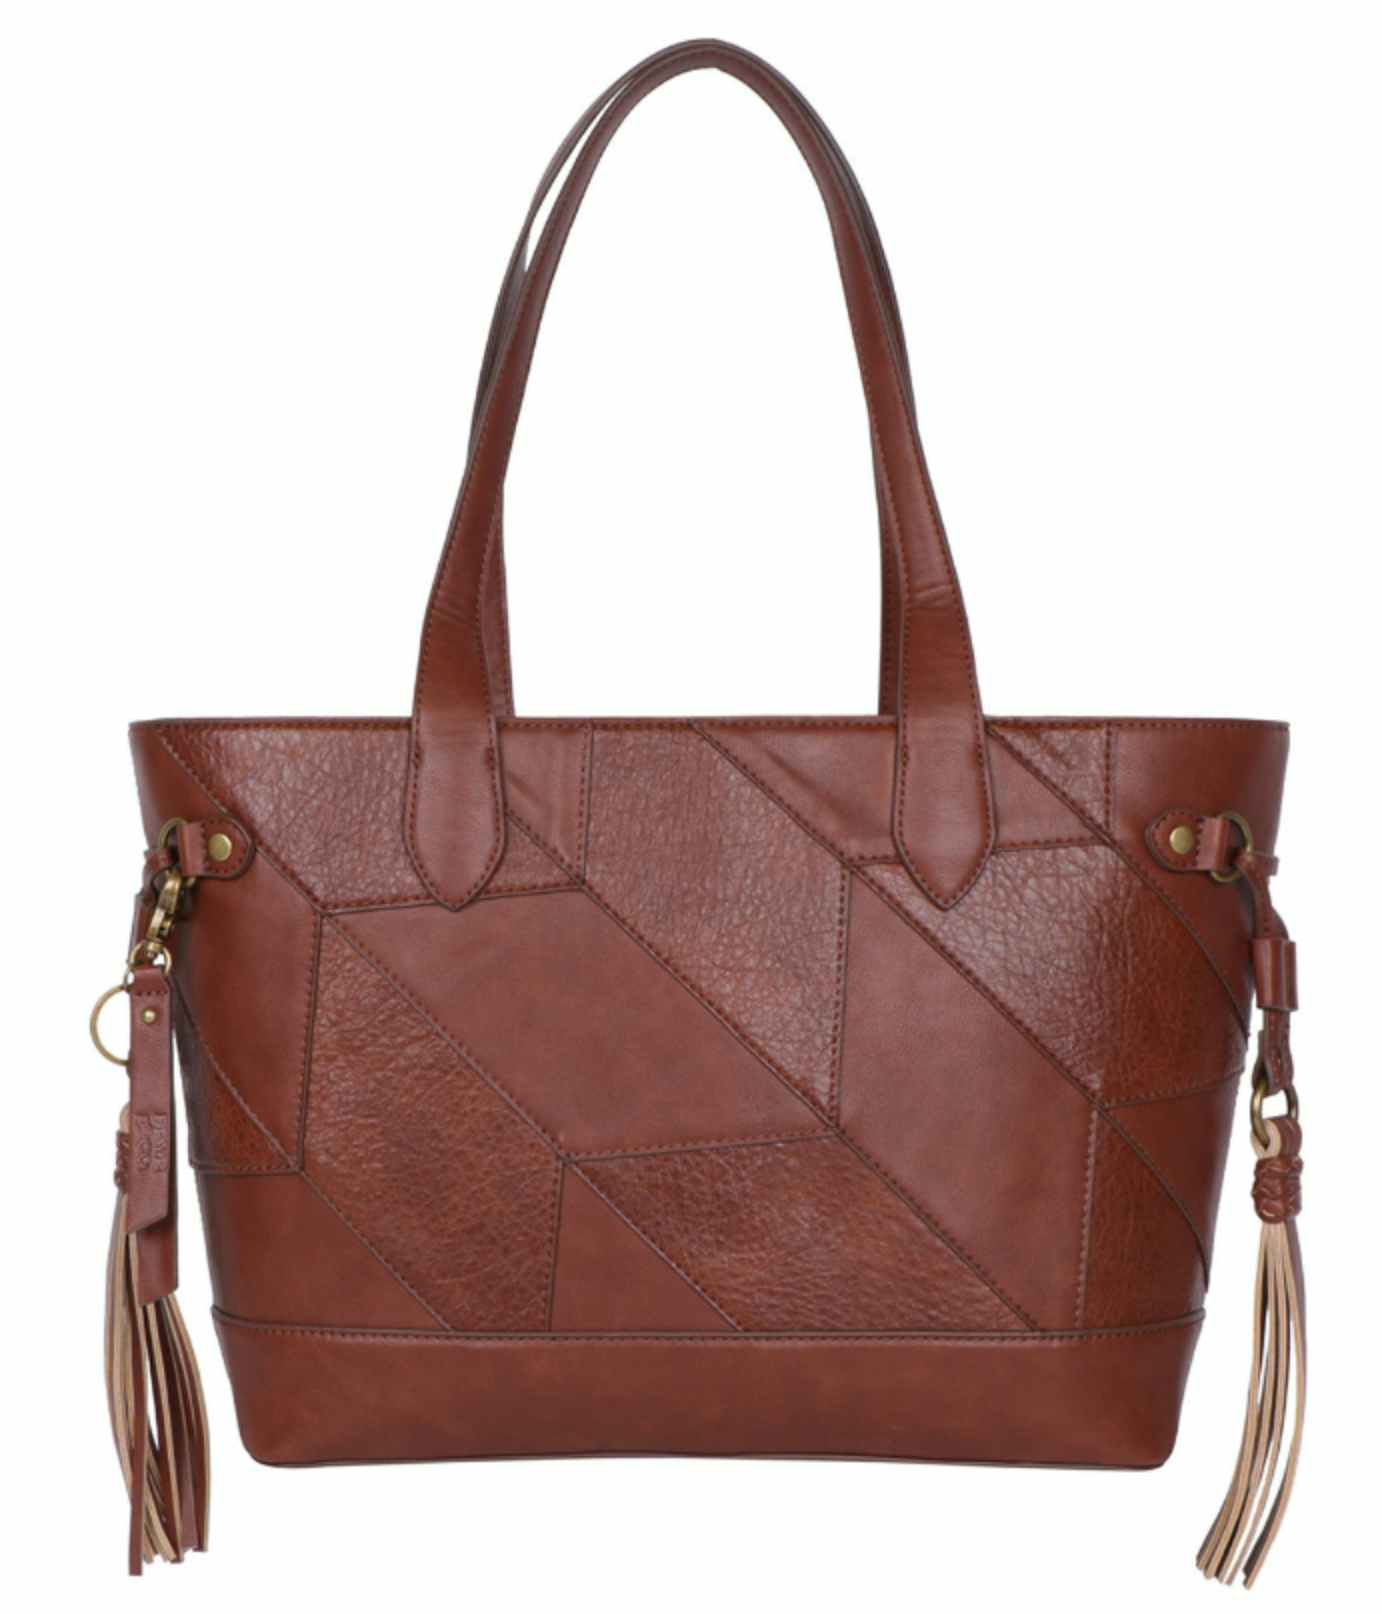 a brown tote bag